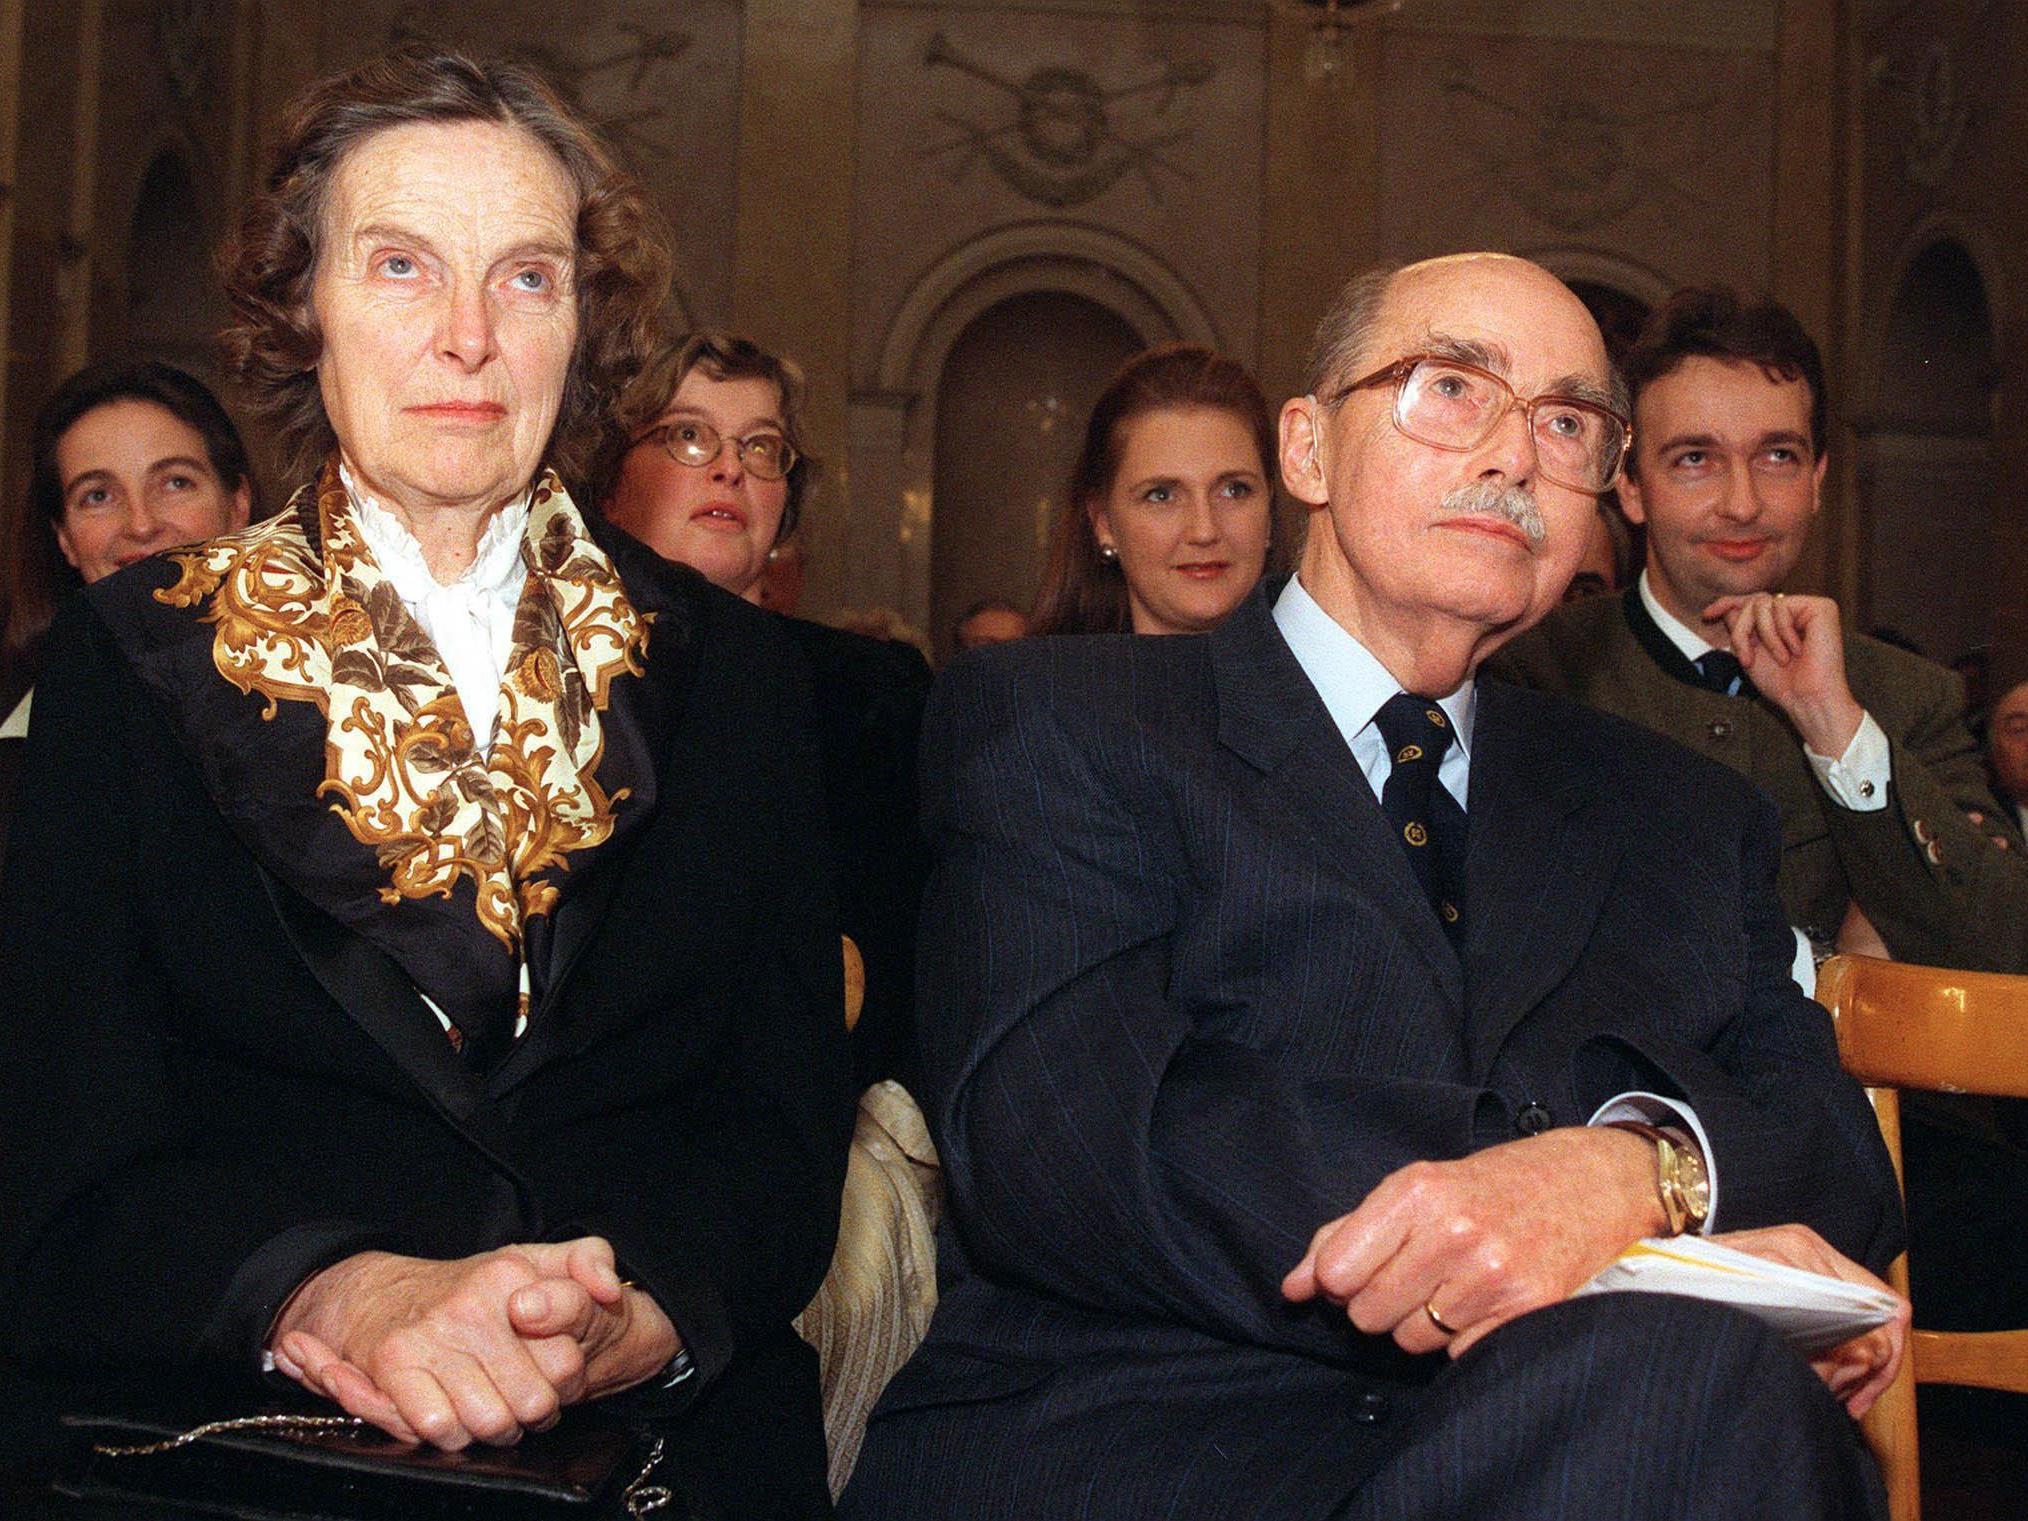 Eugena und Otto Habsburg 1997 zum 85. Geburtstag von Otto Habsburg in Wien